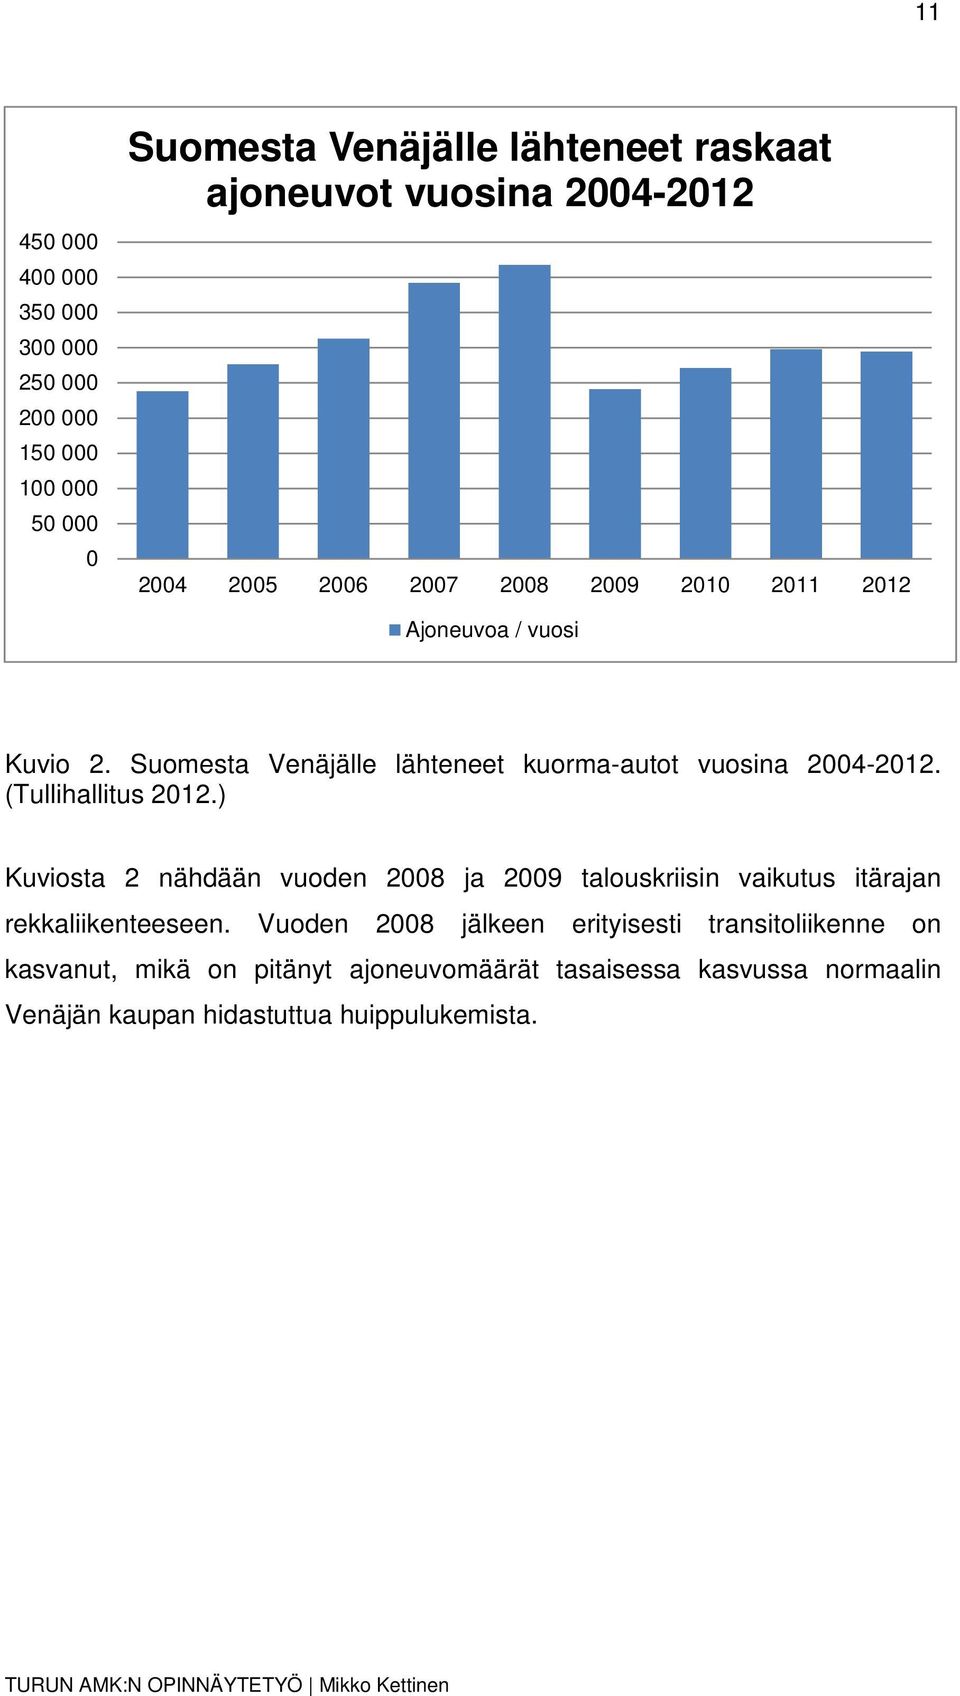 Suomesta Venäjälle lähteneet kuorma-autot vuosina 2004-2012. (Tullihallitus 2012.